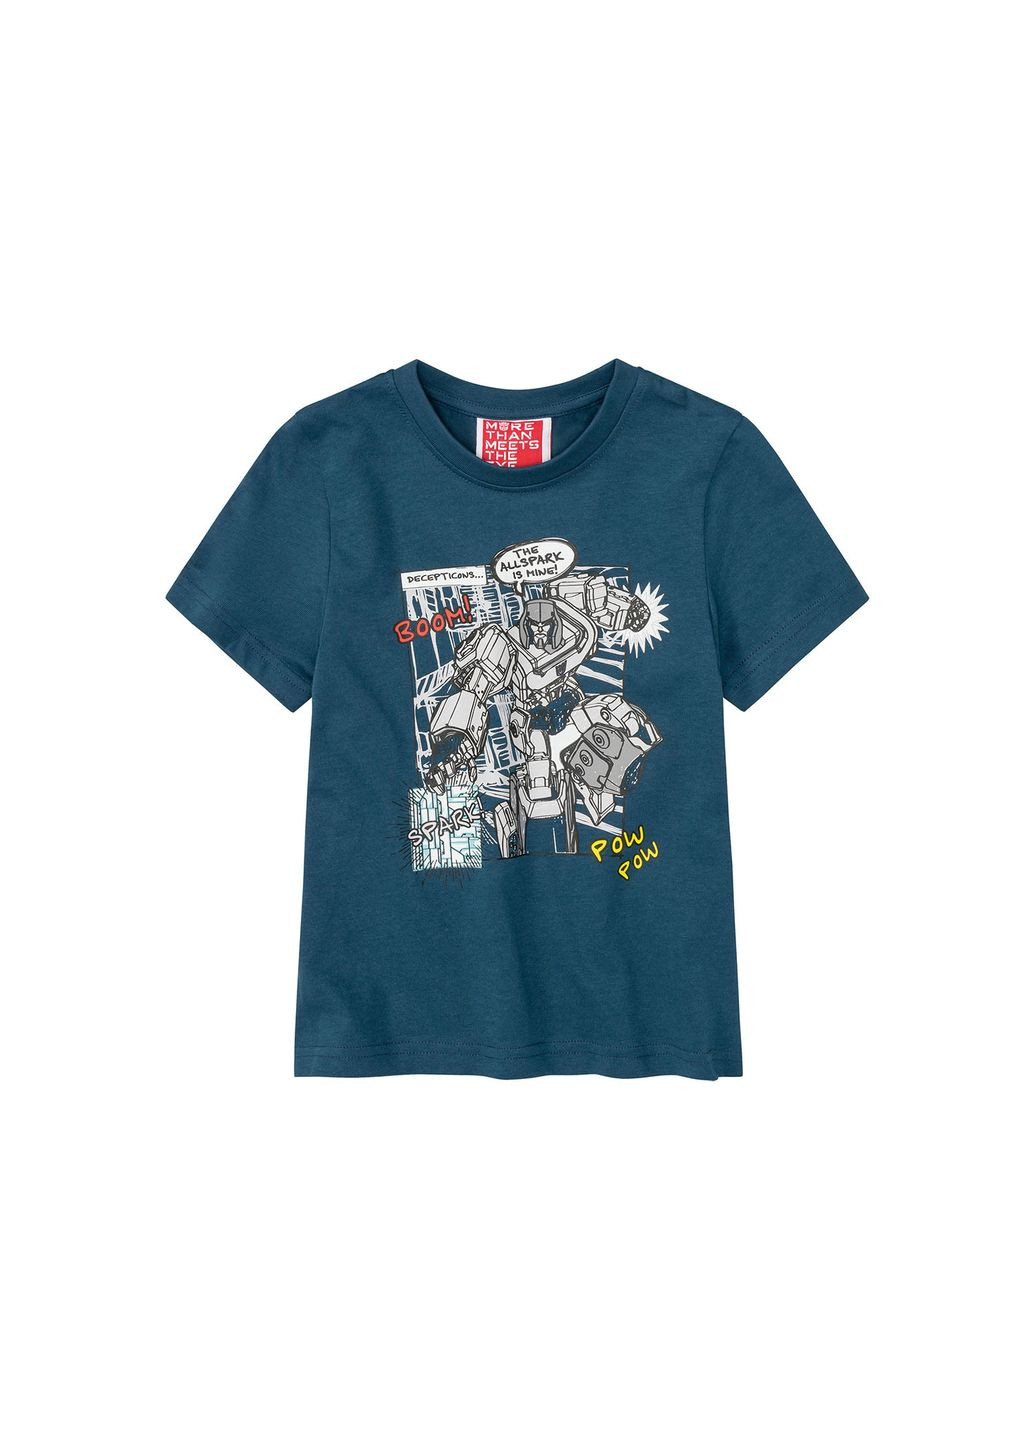 Бирюзовая демисезонная футболка хлопковая з принтом для мальчика трансформер / transformers 381964 Disney